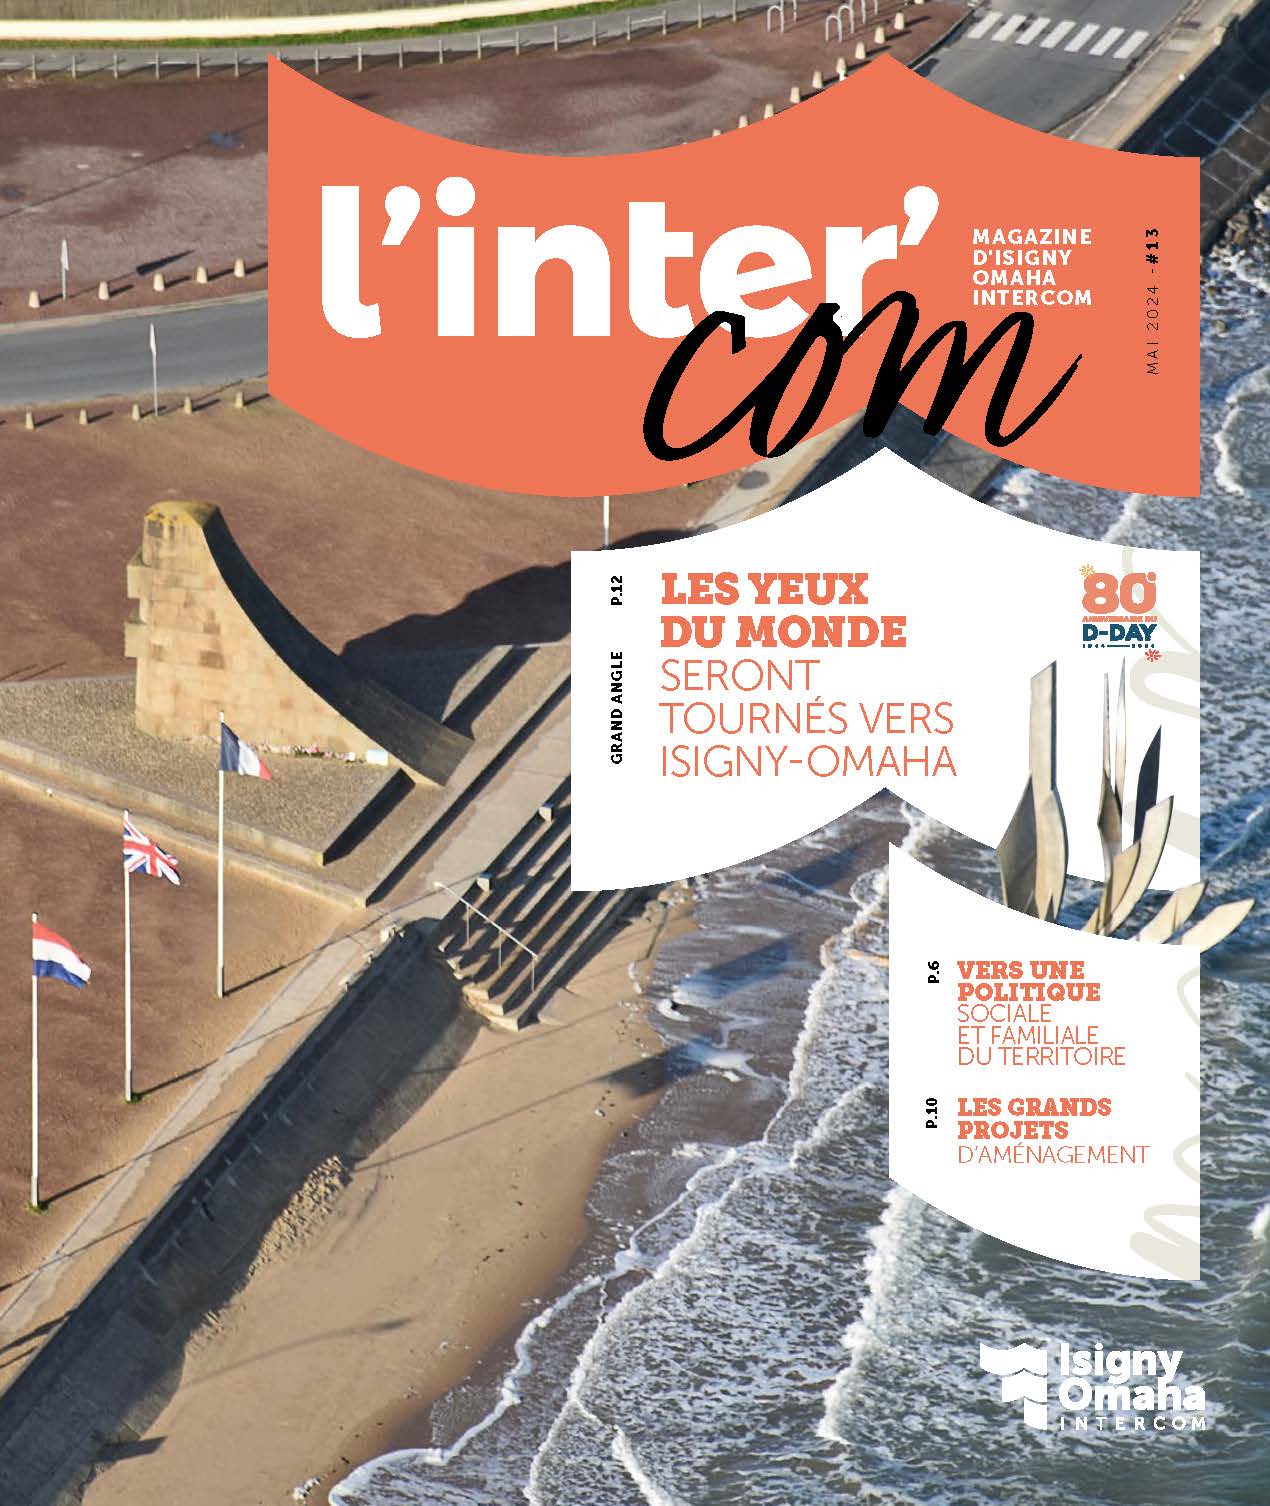 couverture du magazine intercommunal n°13 montrant le monument signal à Saint-Laurent sur Mer